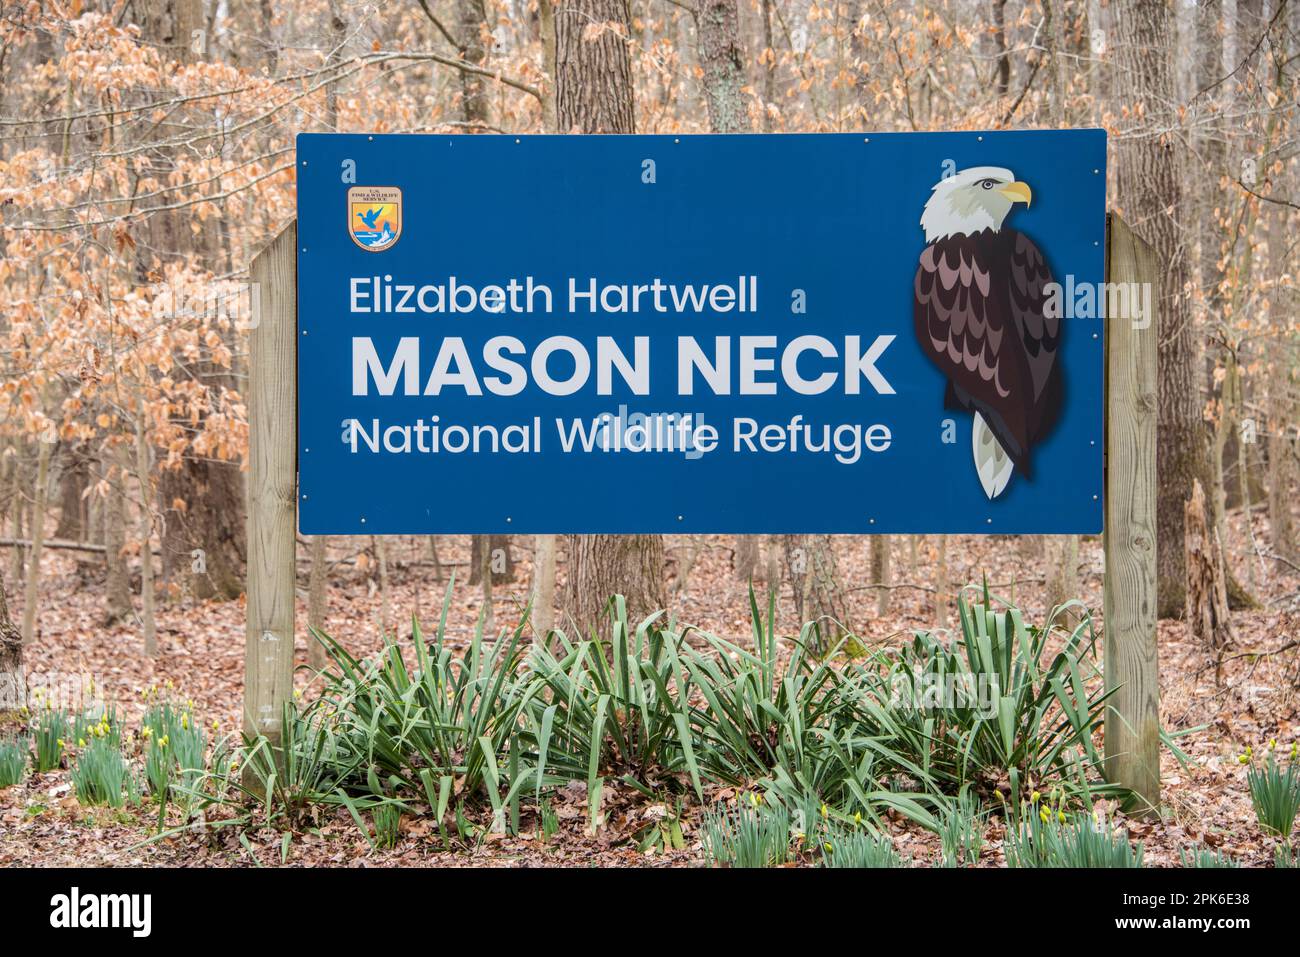 Entrance sign to the Elizabeth Hartwell Mason Neck national wildlife refuge, Fairfax County, Virginia, USA Stock Photo